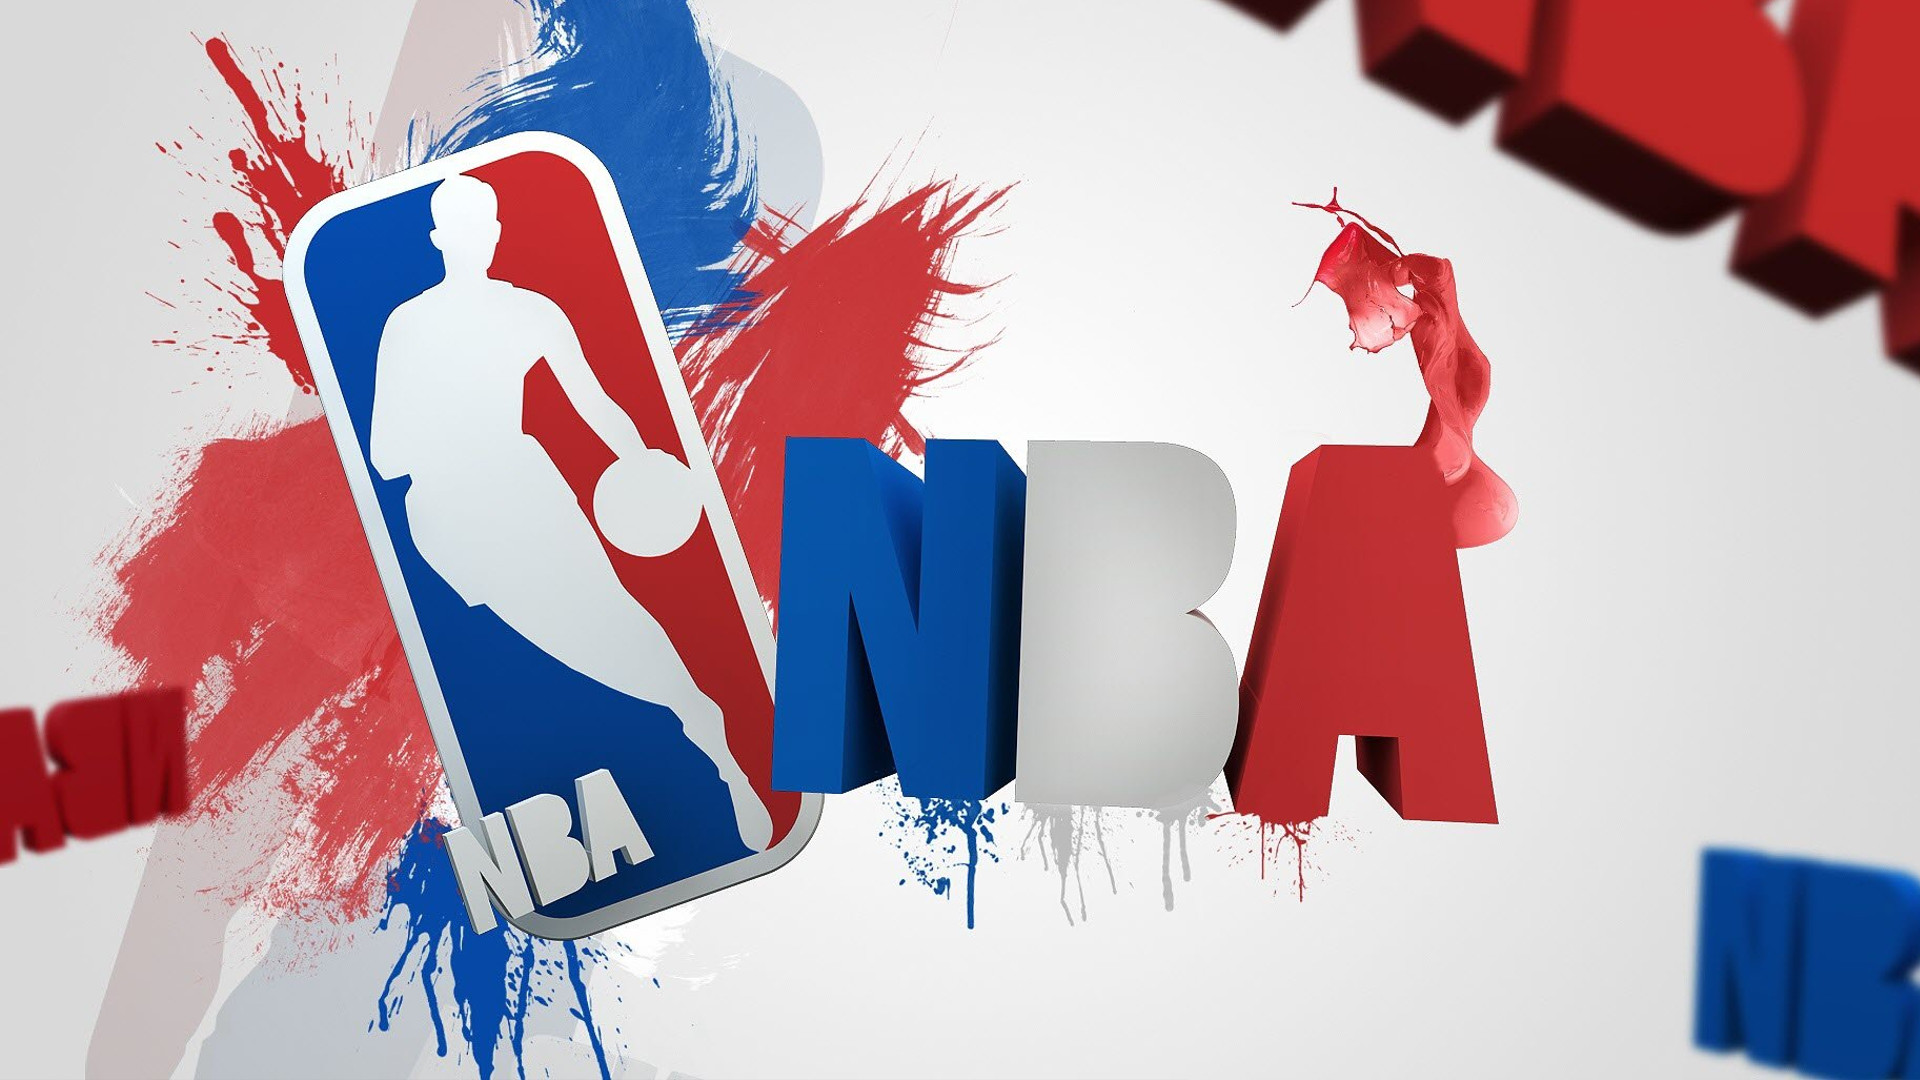 NBA On-demand addon for Kodi and XBMC